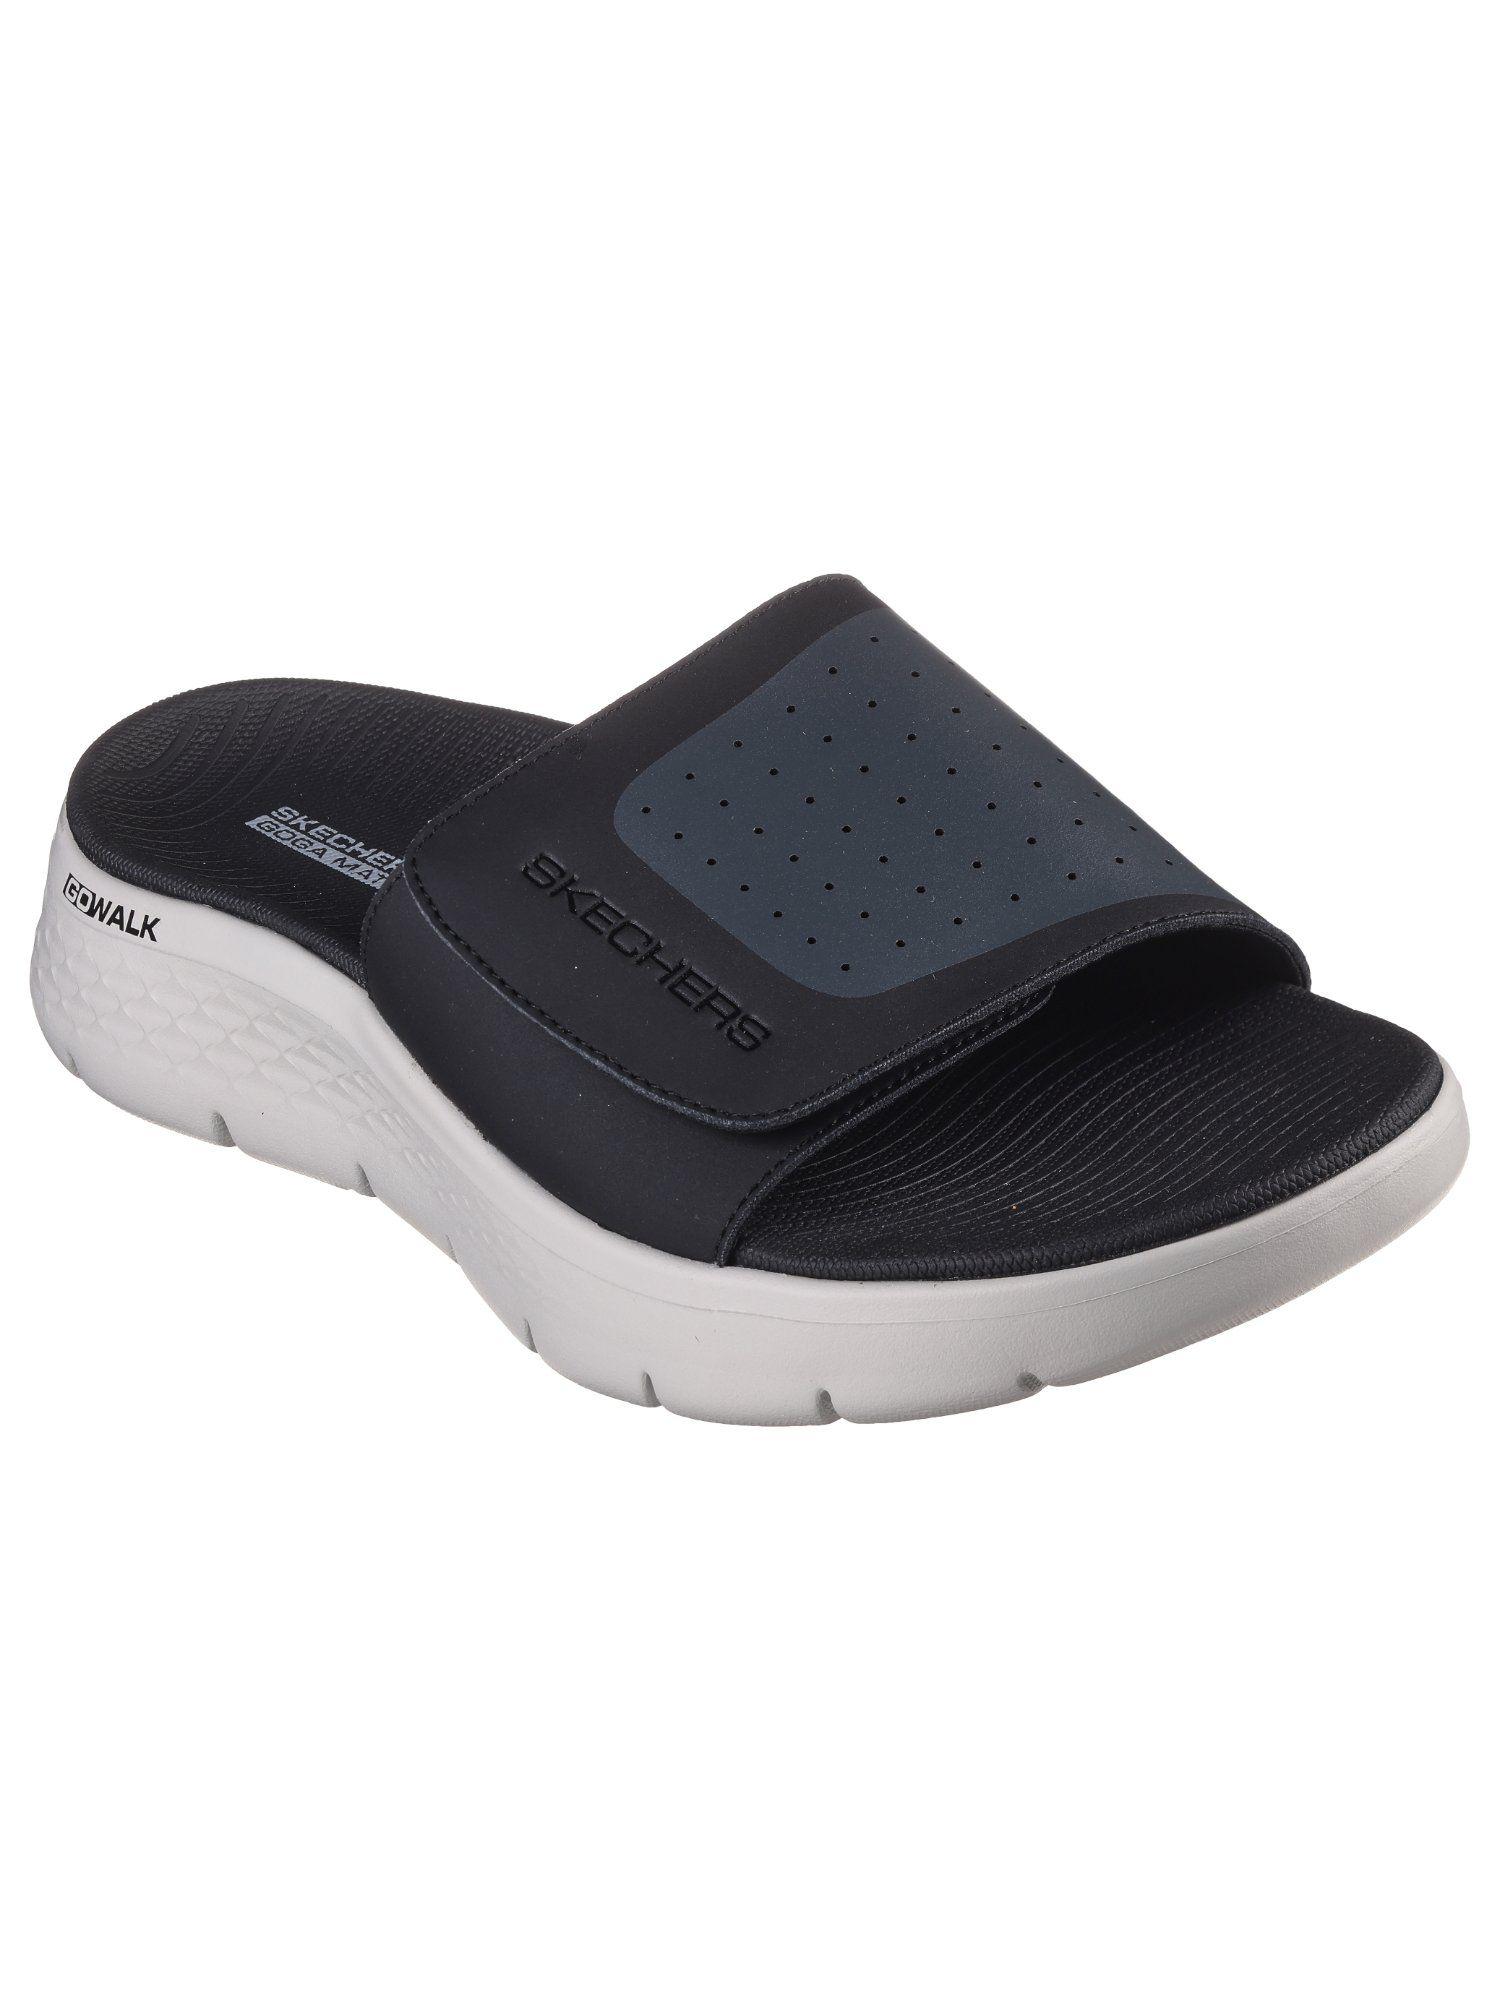 go-walk-flex-sandal-black-sliders